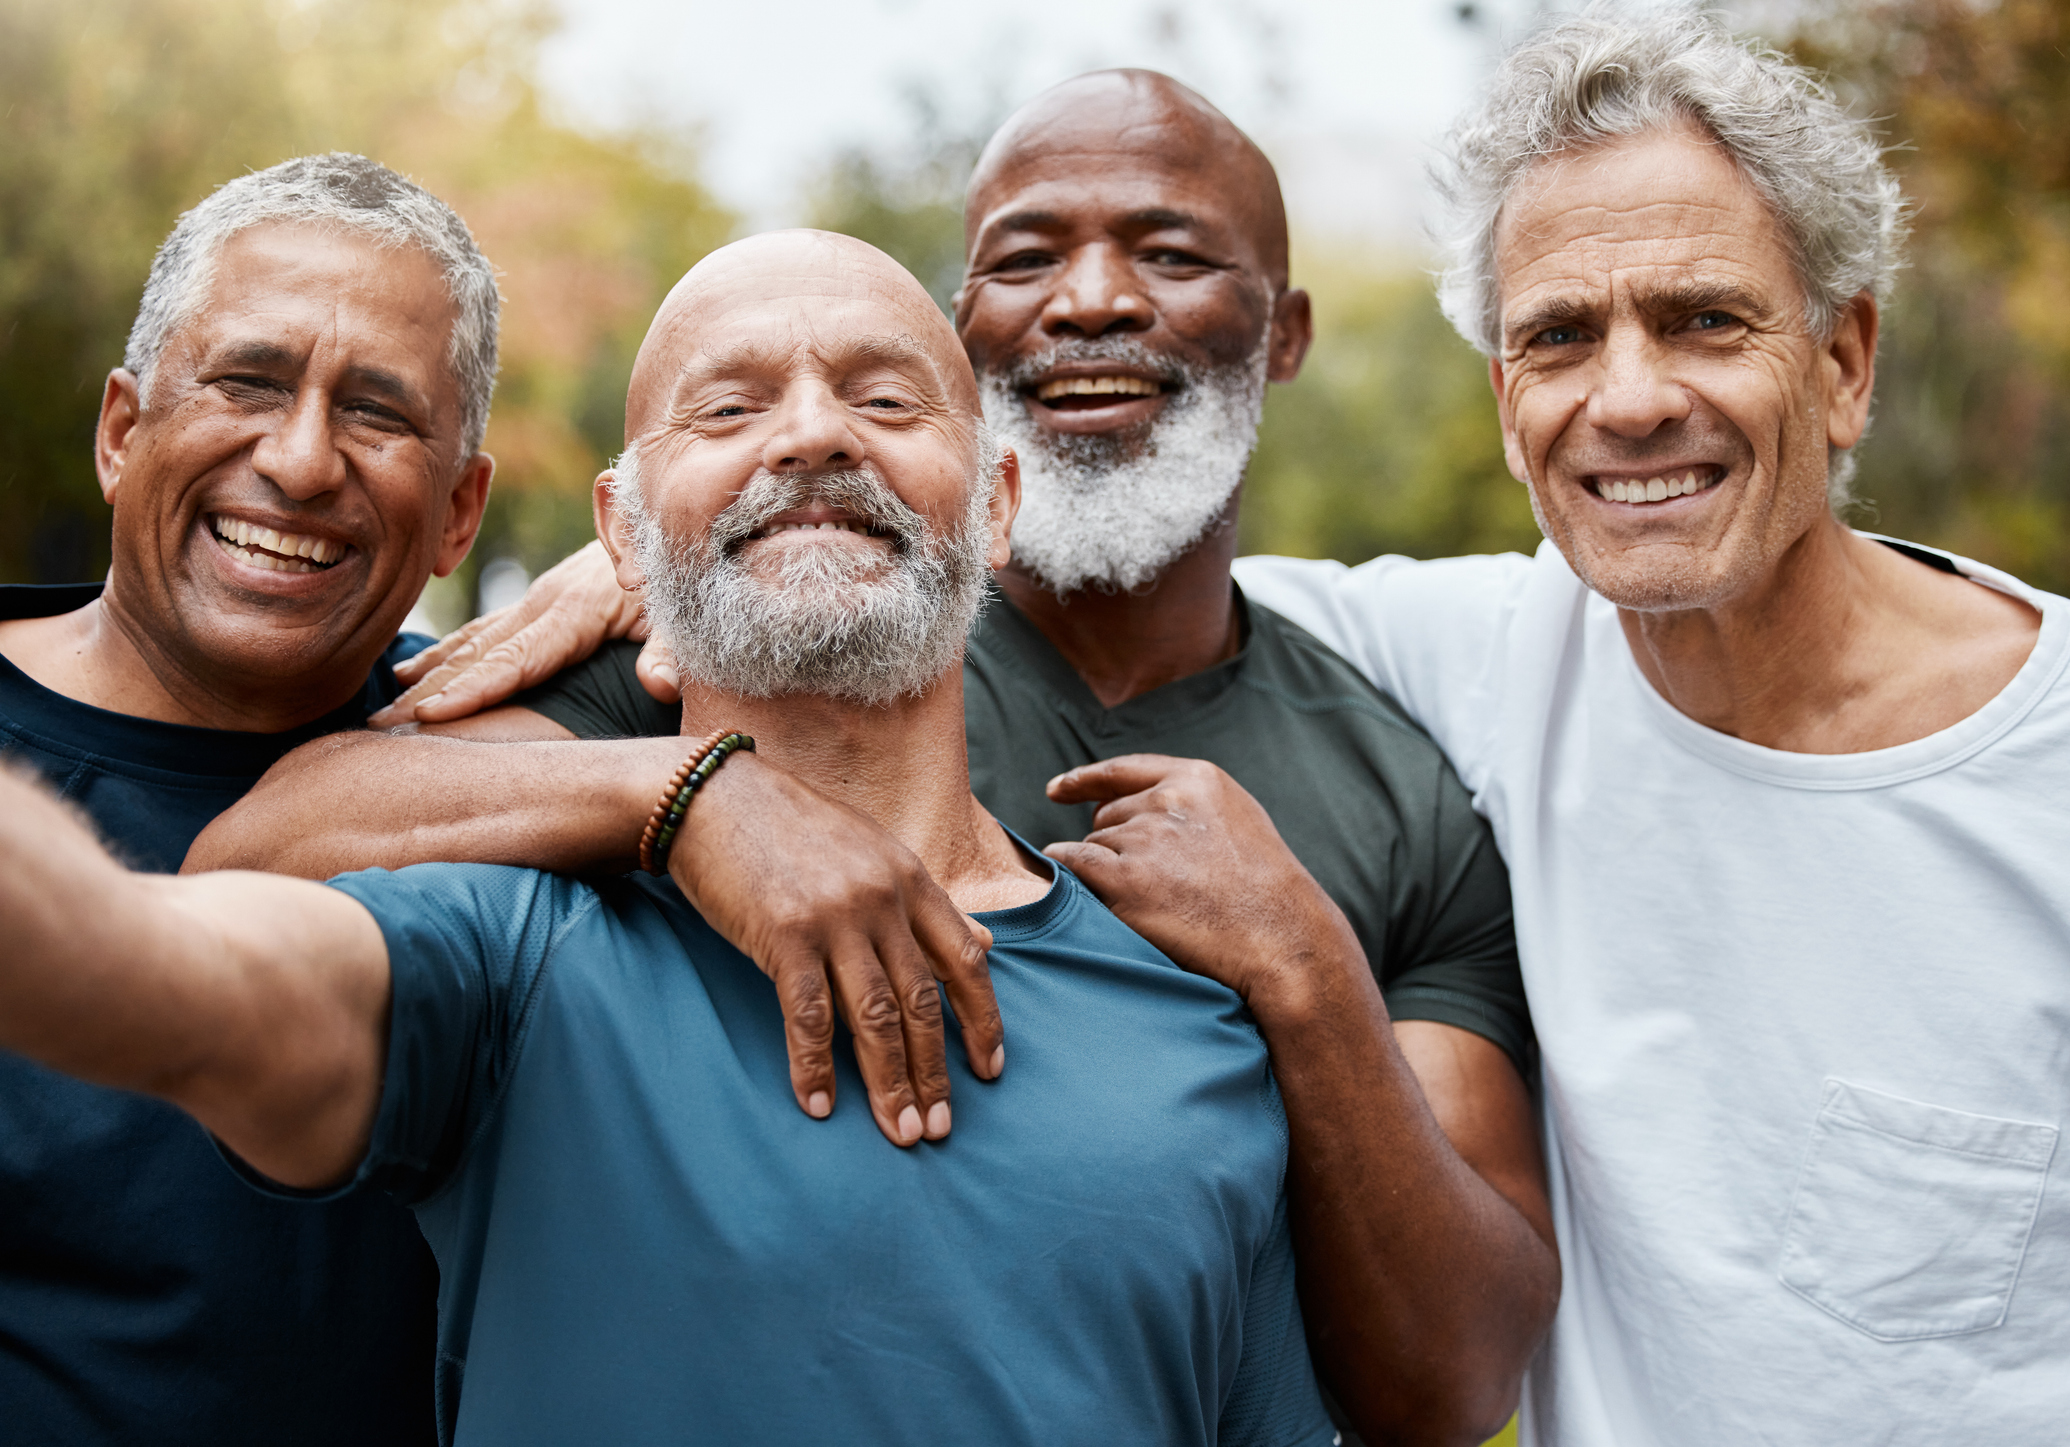 A group of older men pose for a selfie.